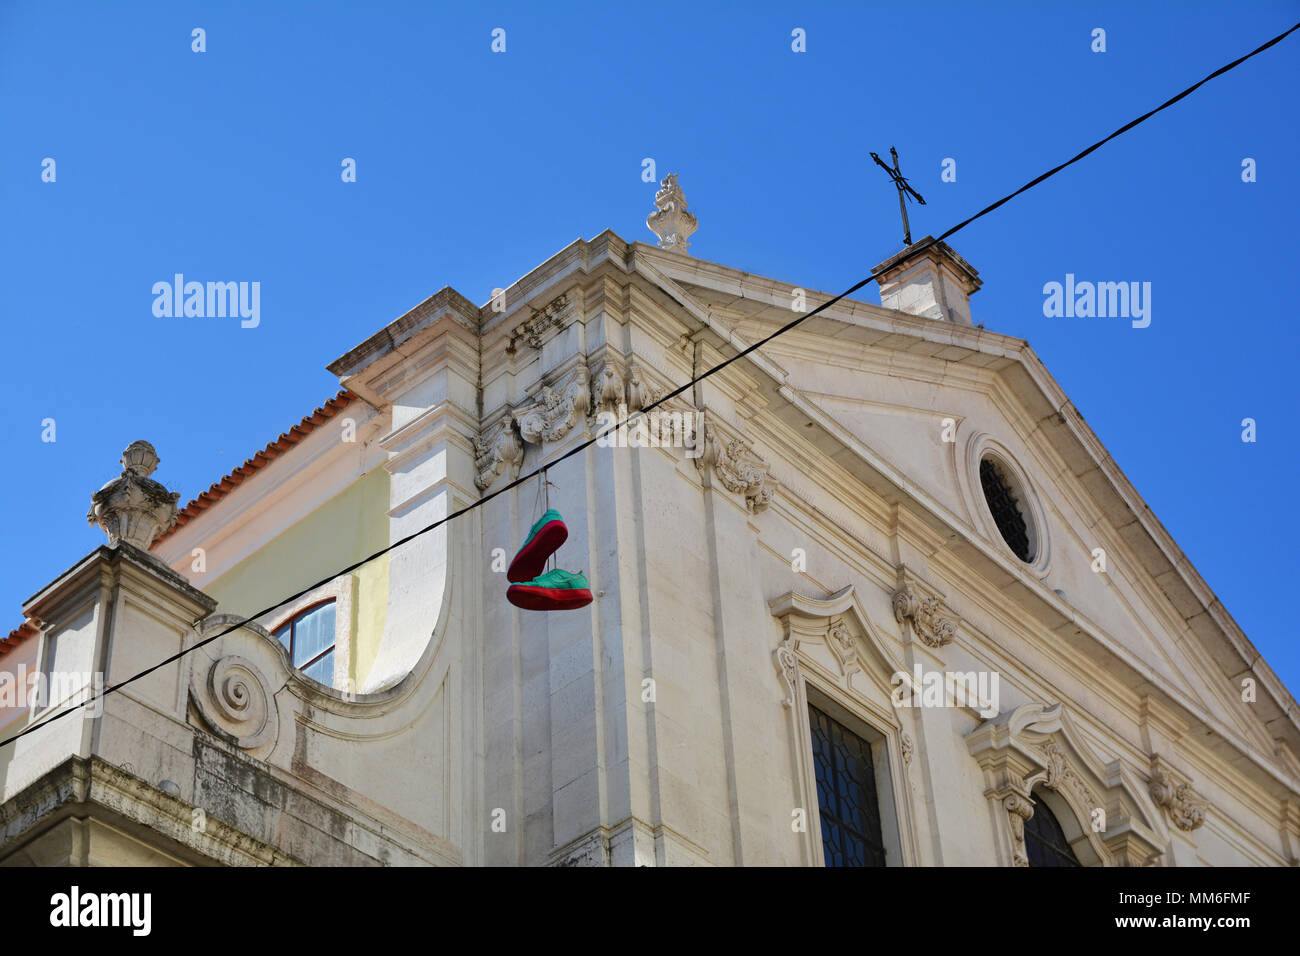 Las herraduras tradicionales cuelga e históricos edificios con fachadas cubiertas con azulejos portugueses pintados, distrito de Chiado, Lisboa, Portugal Foto de stock